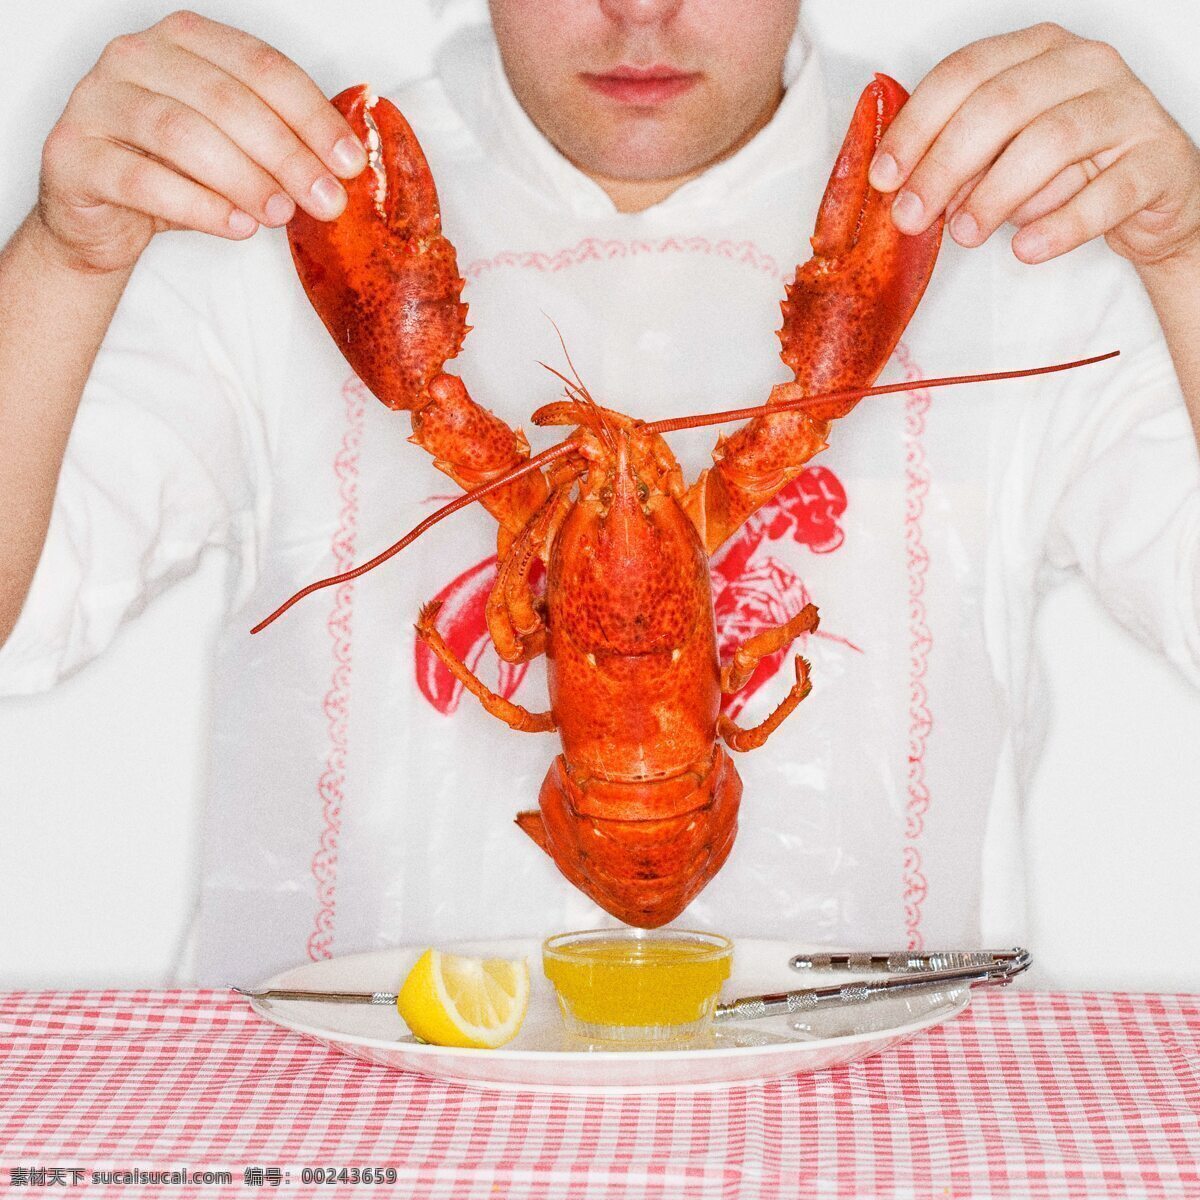 虾 龙虾 虾公 海鲜 美食 柠檬 高清图片 餐饮美食 食物原料